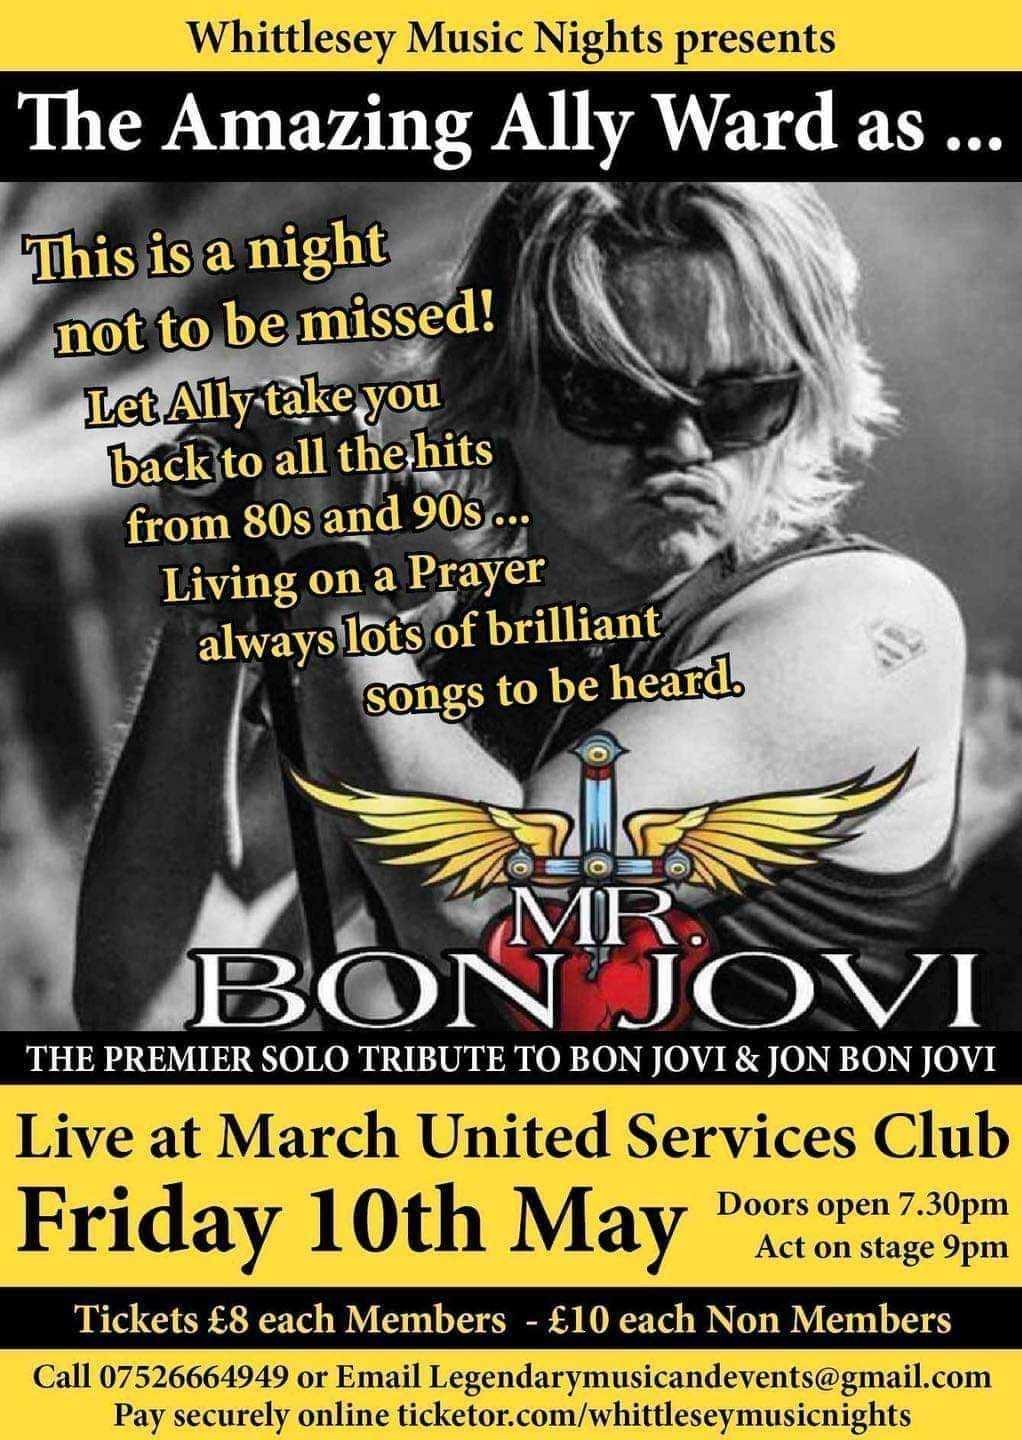 Online Offer Only  on mai 10, 19:30@March United Services Club - Achetez des billets et obtenez des informations surwhittlesey music nights 